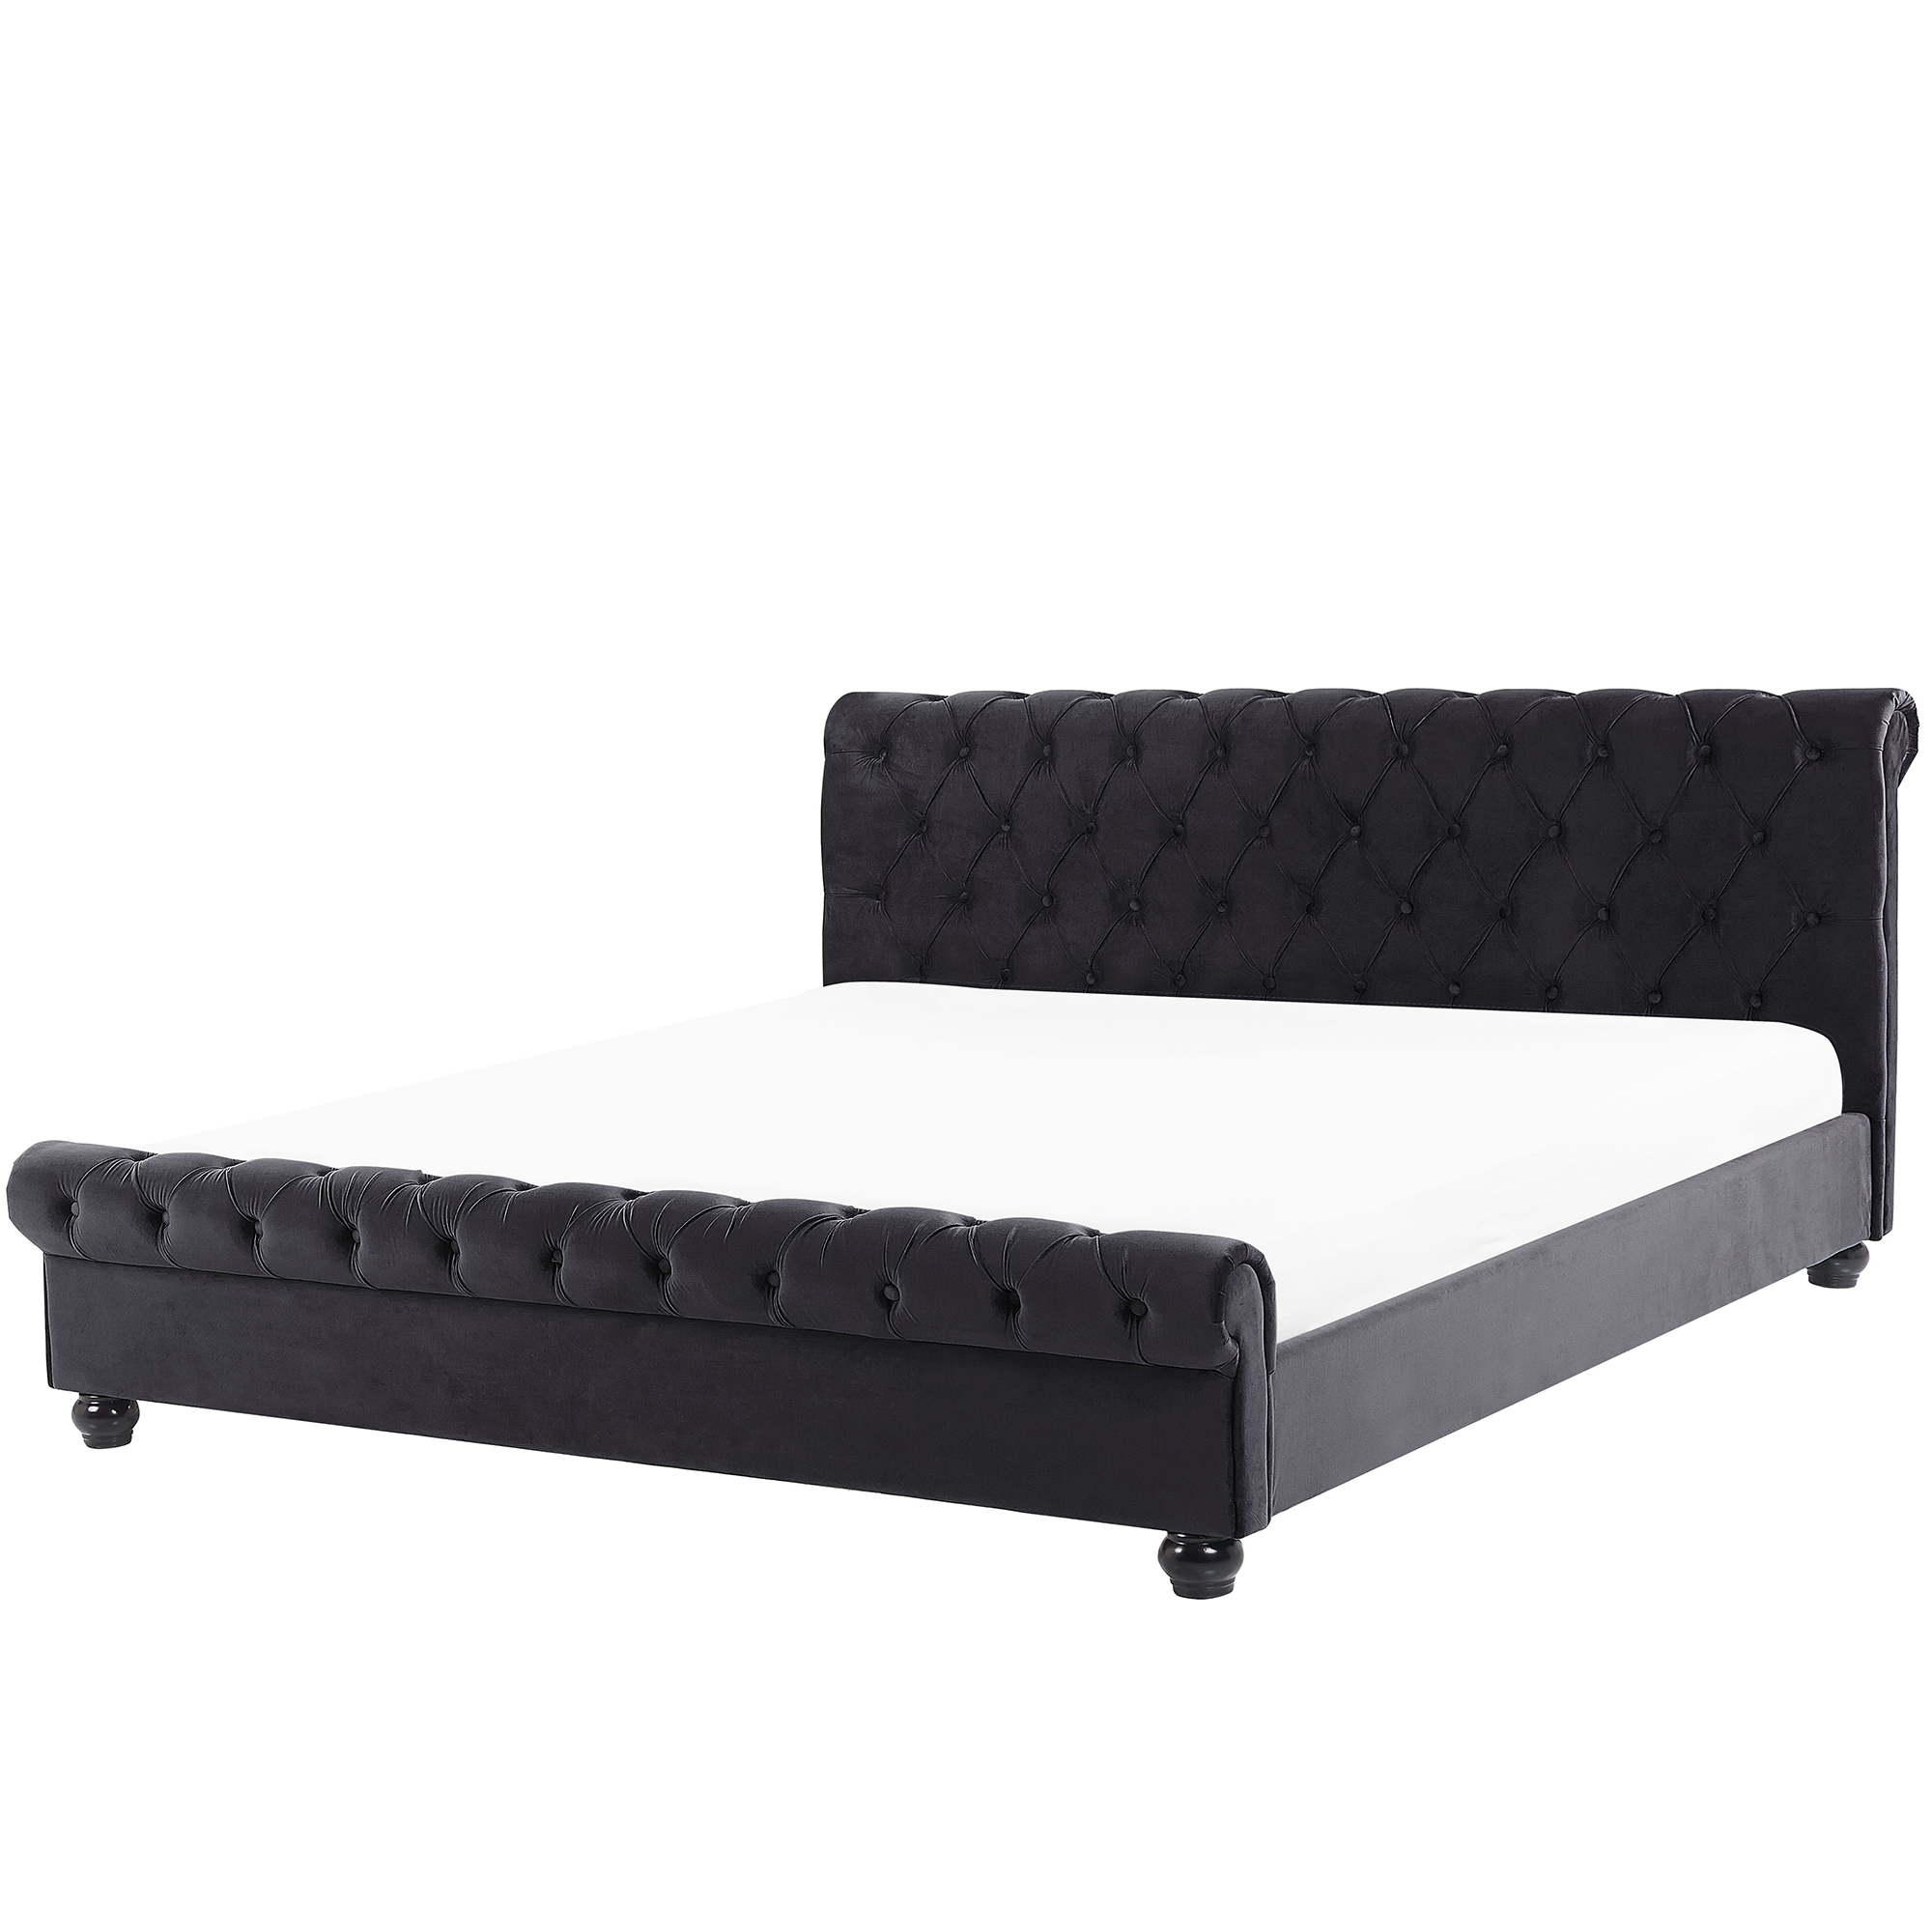 Beliani Bed Frame Black Velvet Upholstery Black Wooden Legs Super King Size 6ft Buttoned Glam